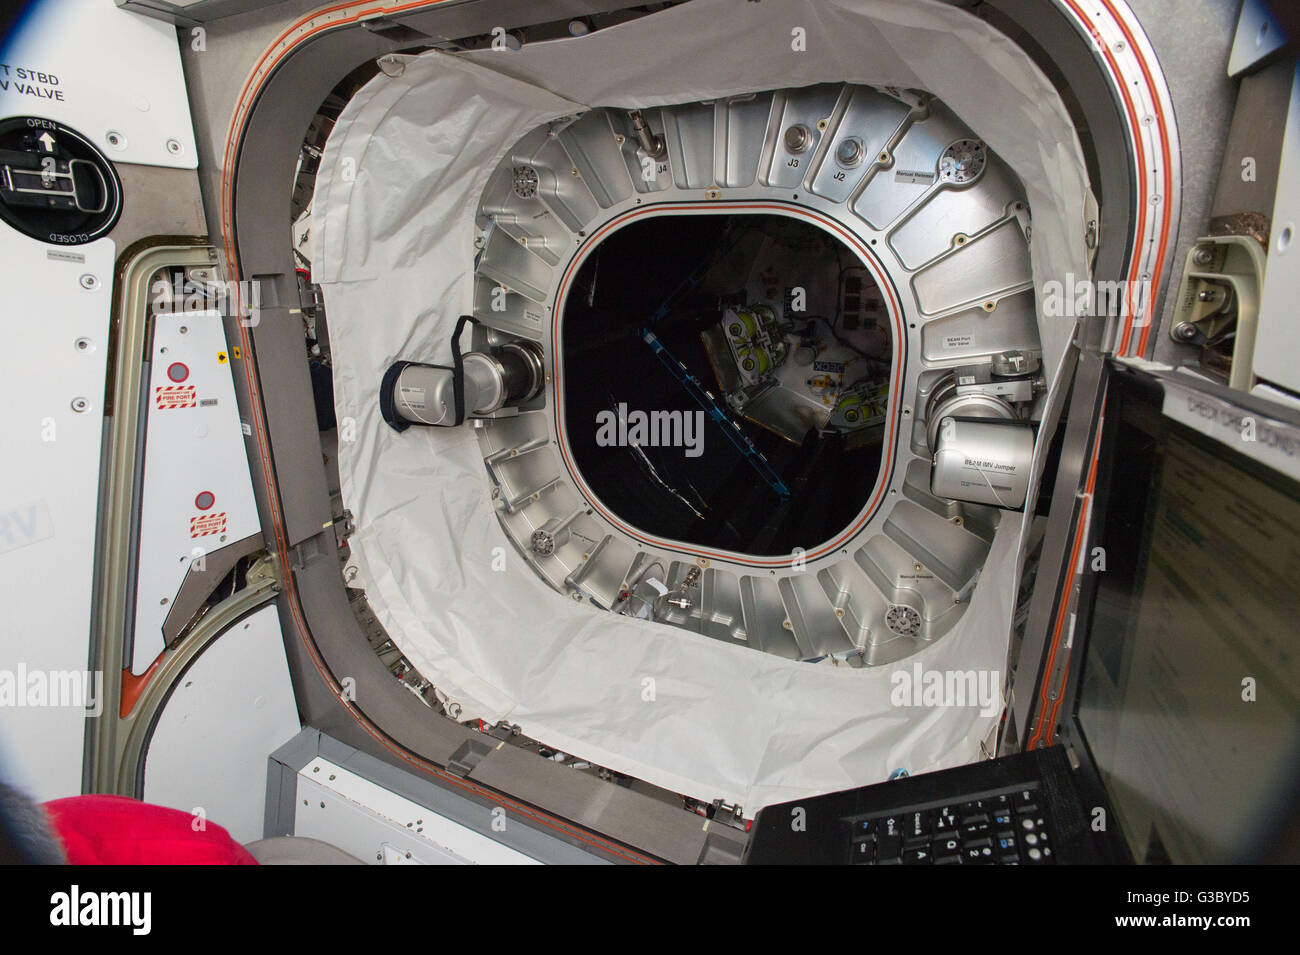 Der Eingang zum Bigelow erweiterbar Aktivitäten-Modul während der Installation des Sensors nach erfolgreicher Expansion an Bord der internationalen Raumstation ISS-Expedition 7. Juni 2016 in der Erdumlaufbahn. NASA testet die Strahl-Modul zum ersten Mal im Raum. Stockfoto